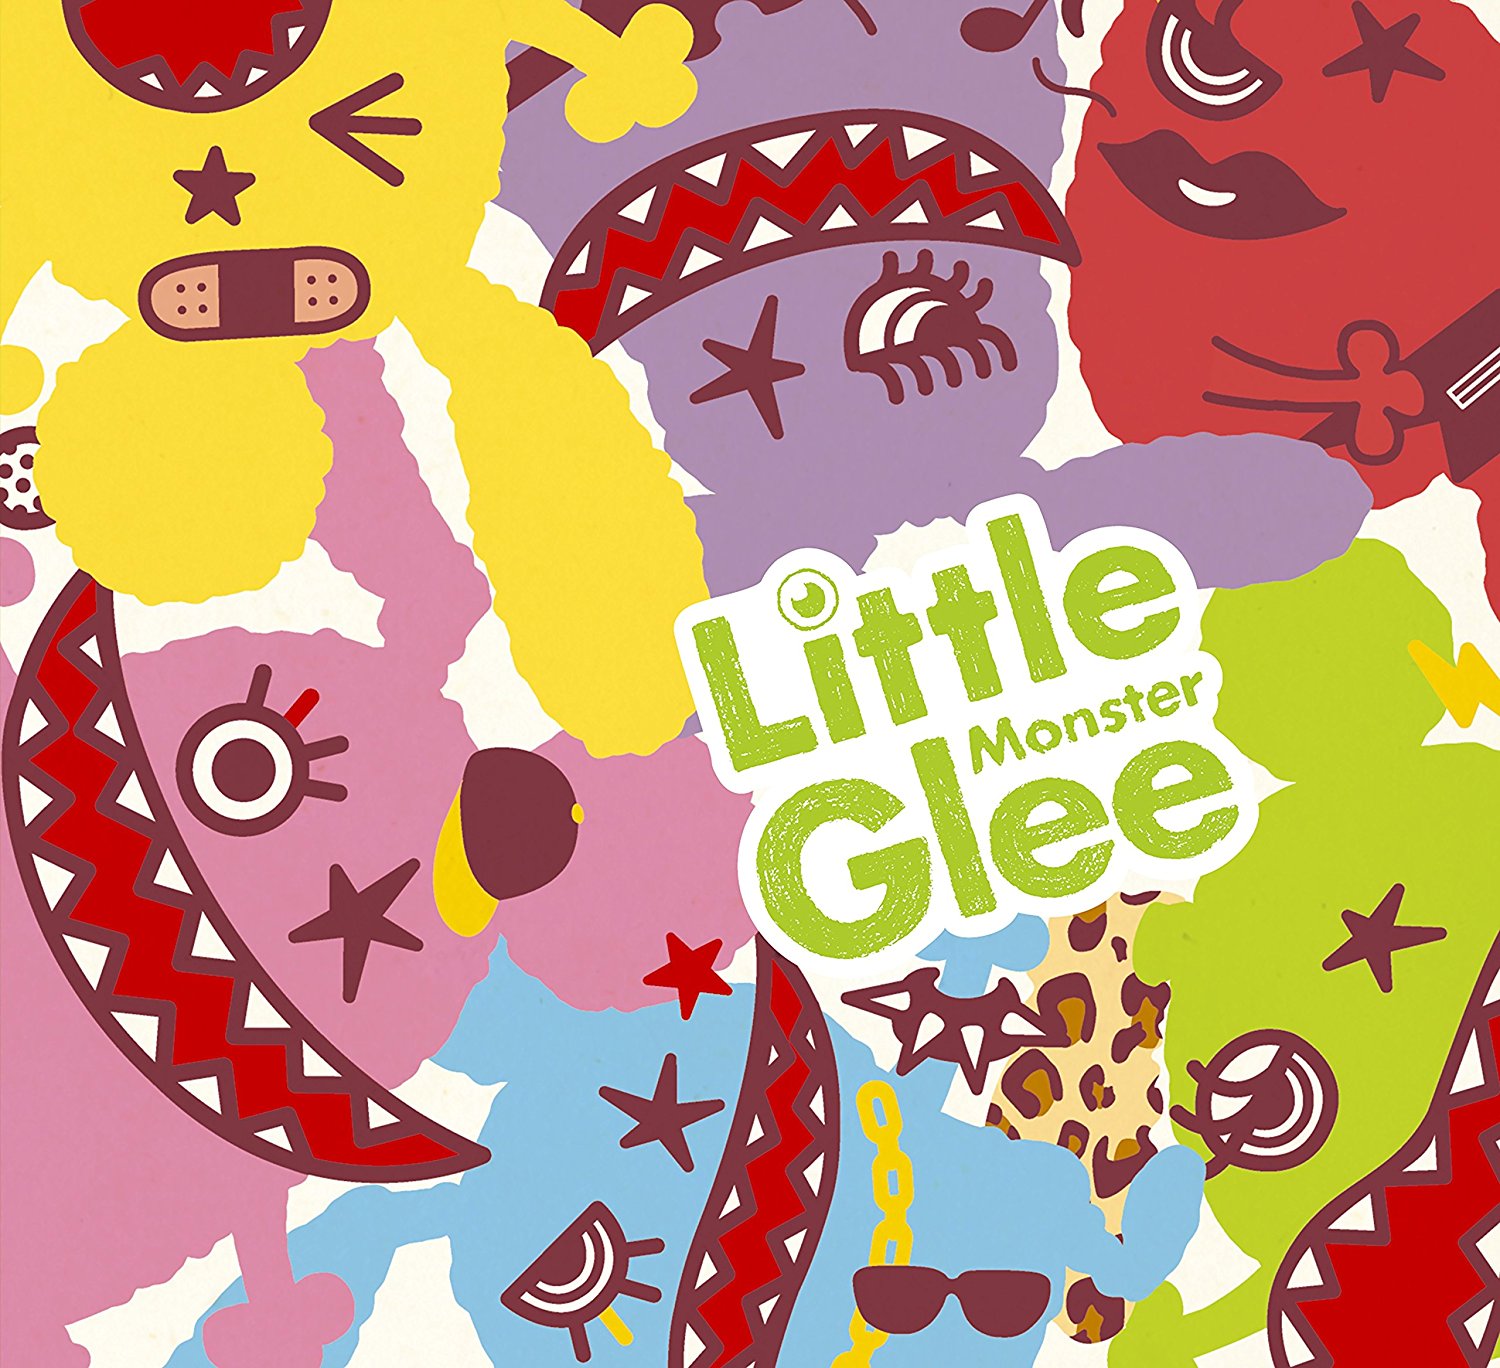 Little Glee Monster 能動的三分間 歌詞 Pv